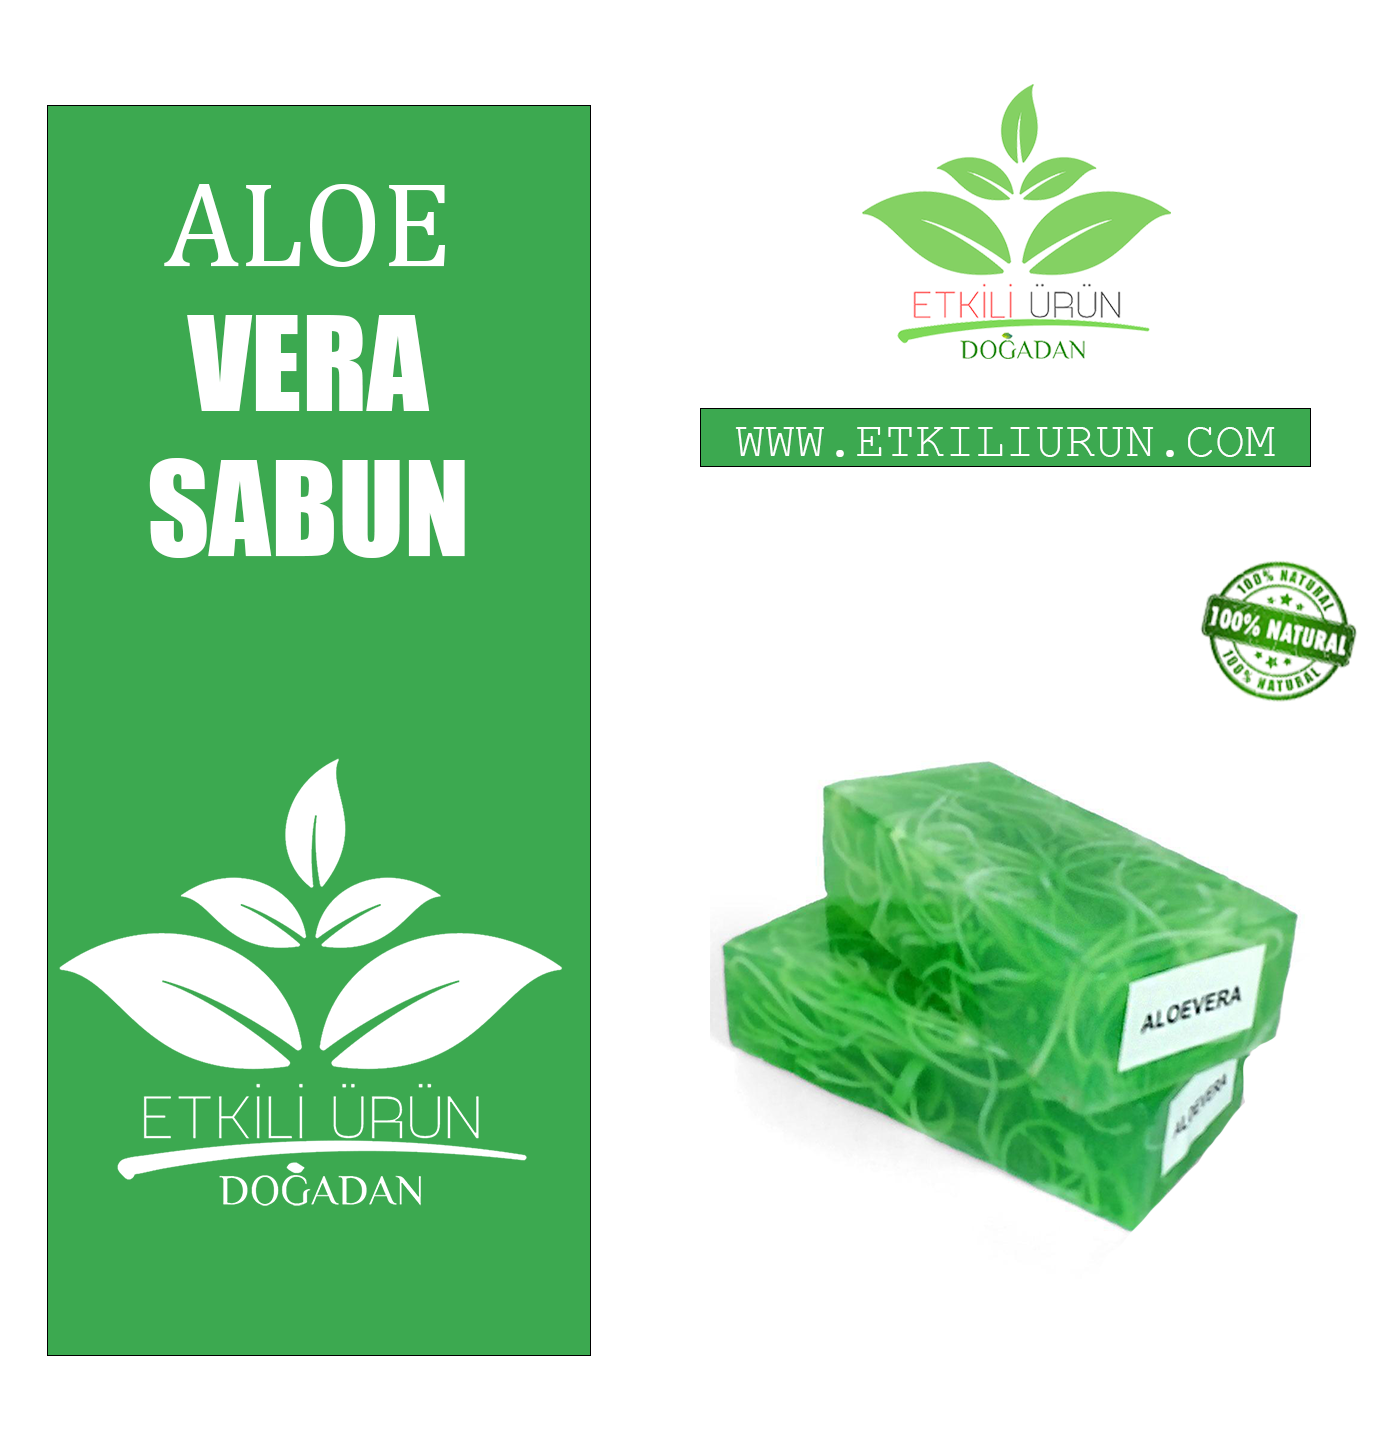 Doğal Aloe Vera Sabunu Cilt Bakımında Etkili ve Doğal Çözüm